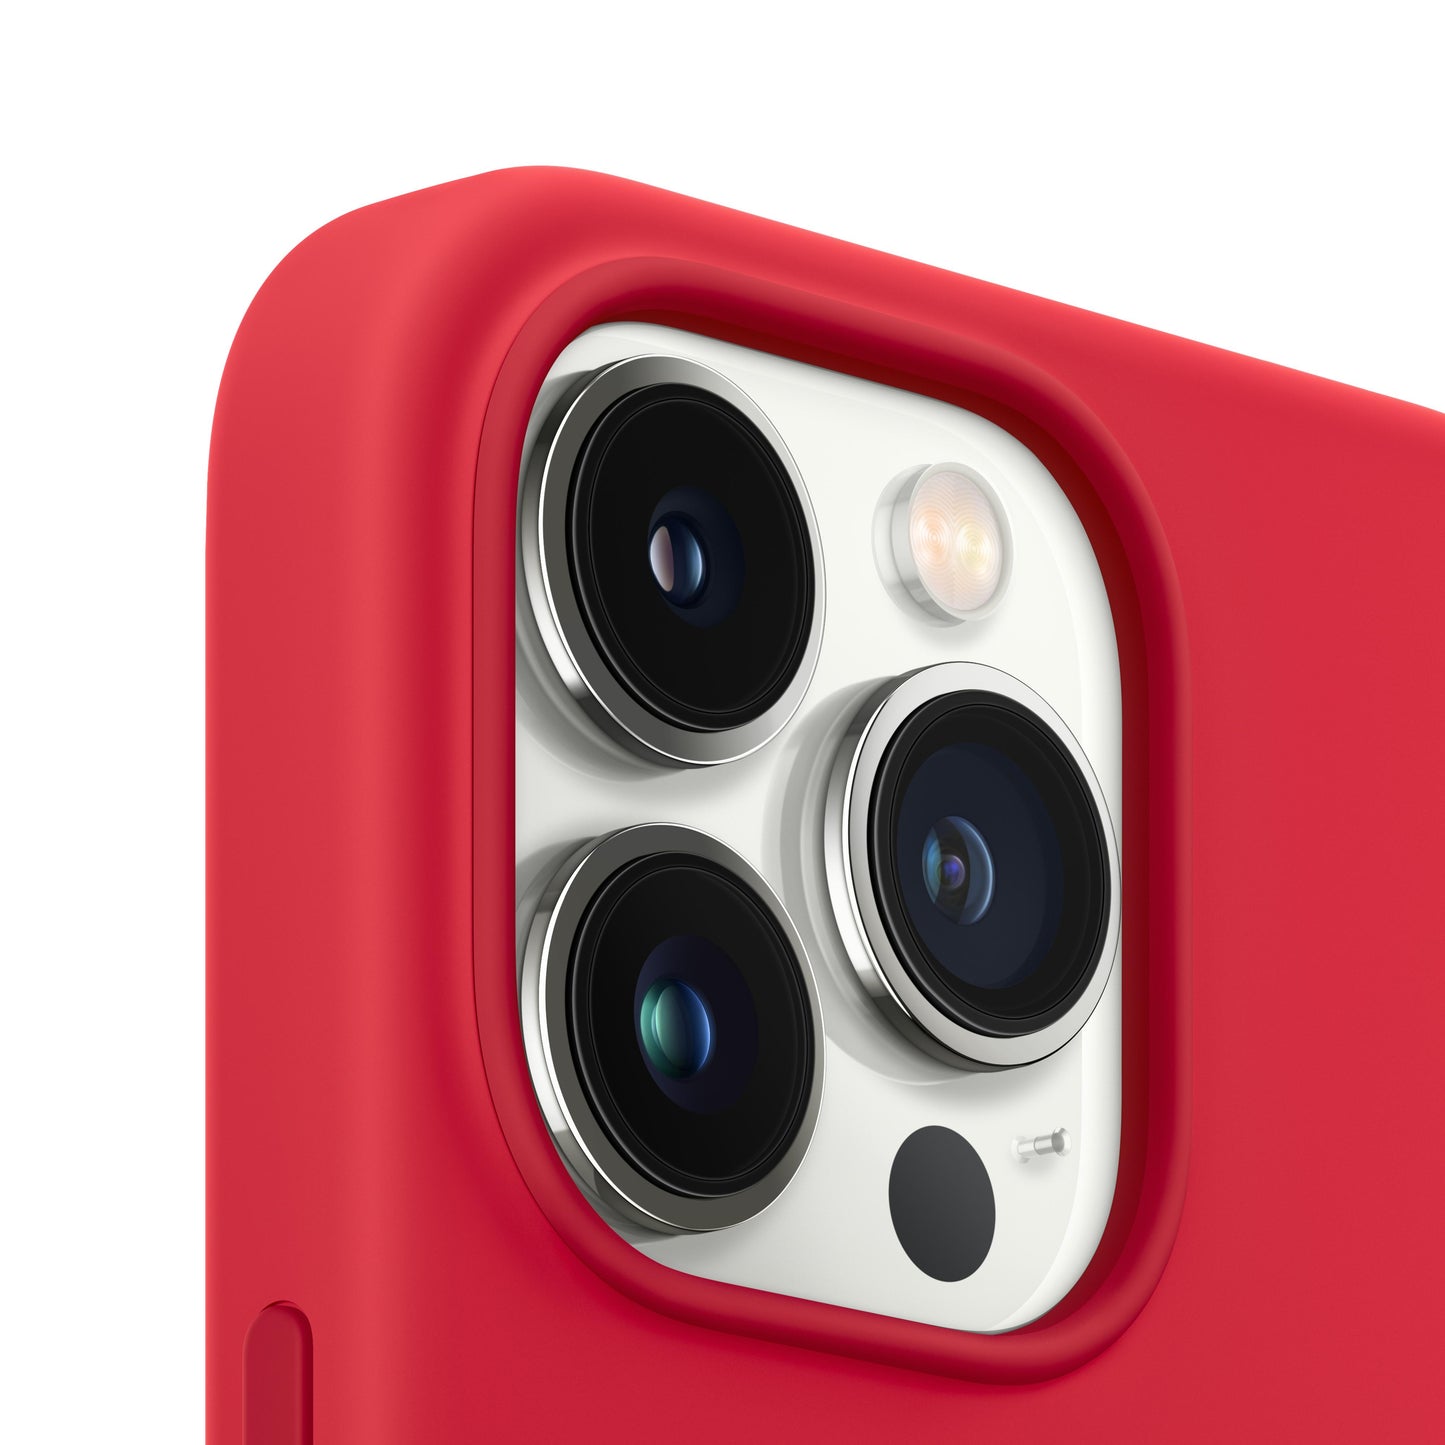 Estuche de silicona con MagSafe para el iPhone 13 Pro - (PRODUCT)RED - Rossellimac